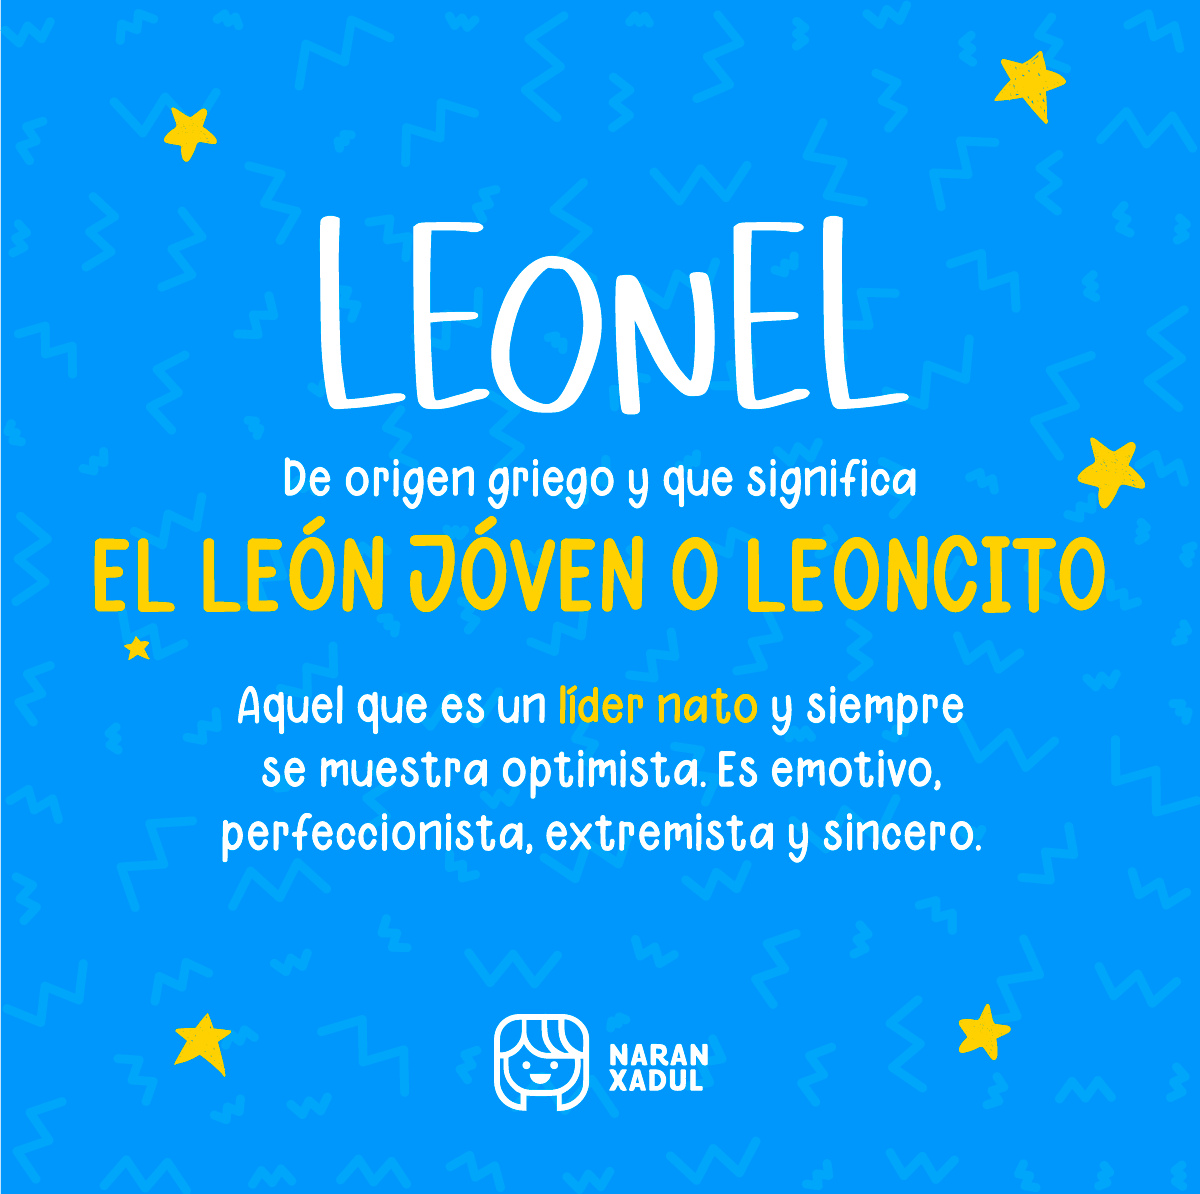 Significado de Leonel